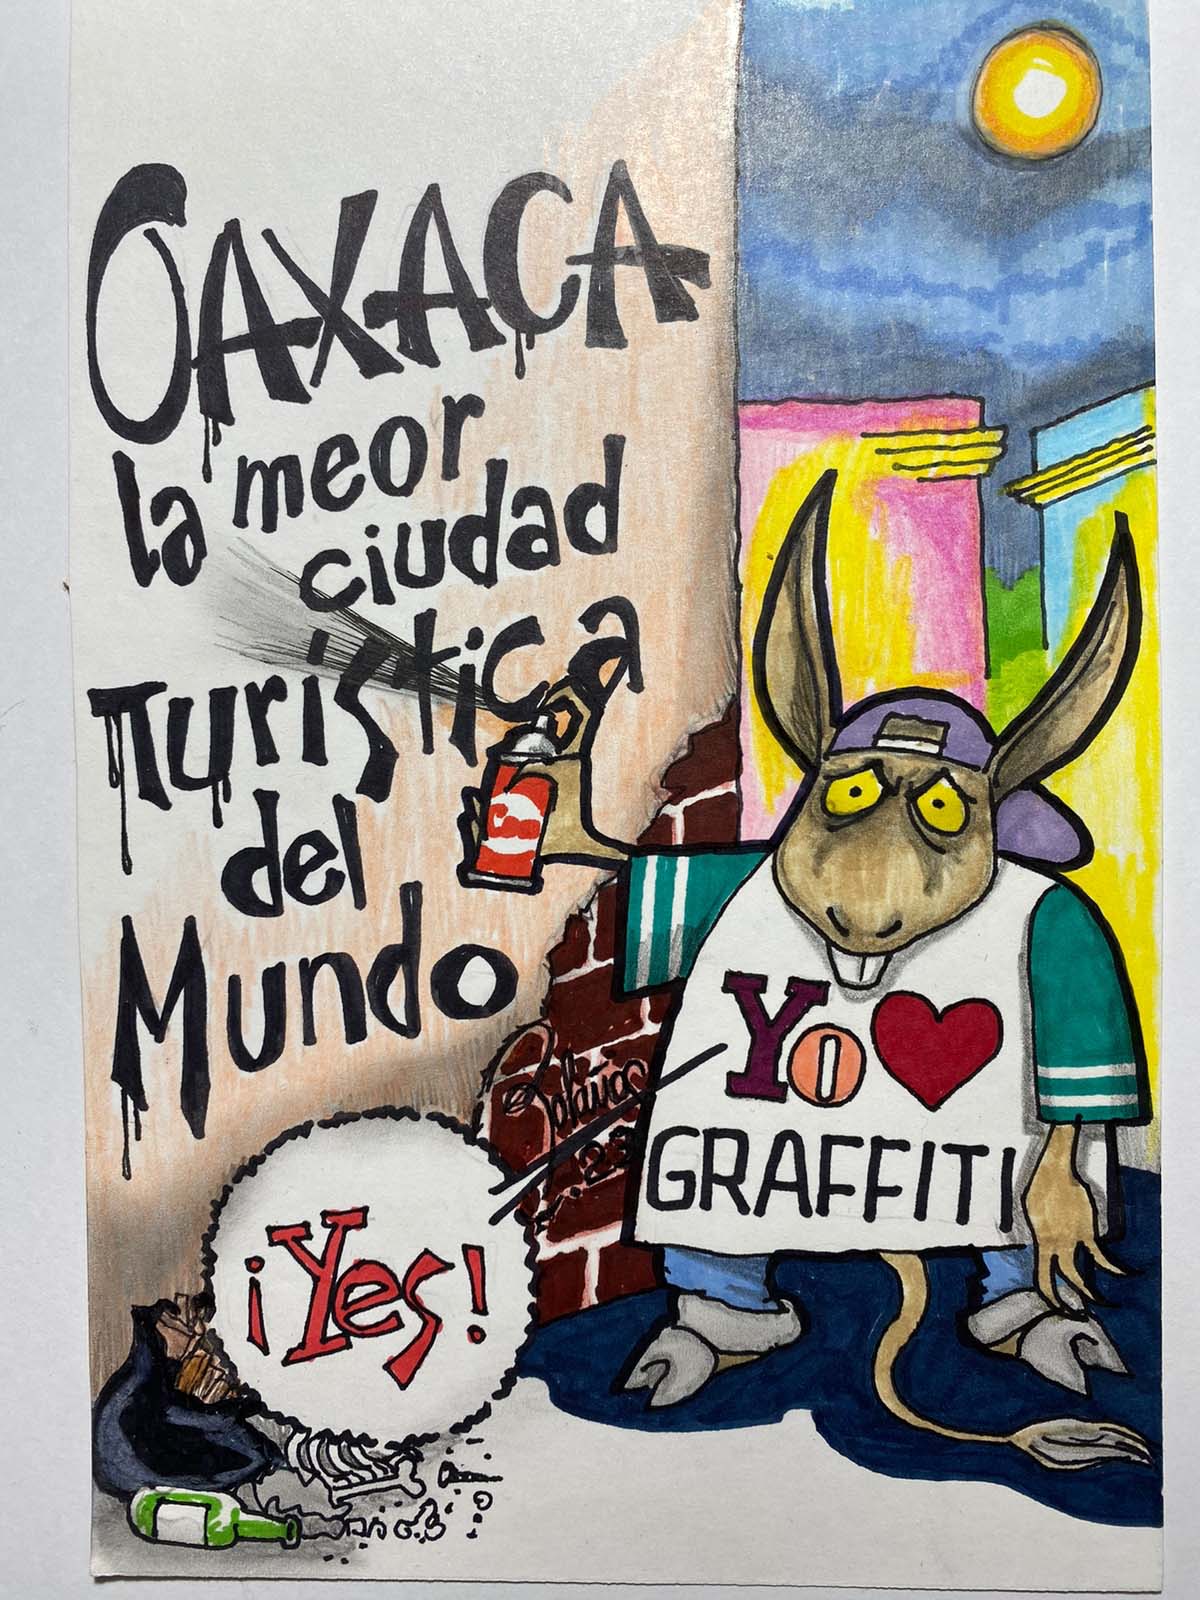 Cartón de Bolaños | El Imparcial de Oaxaca